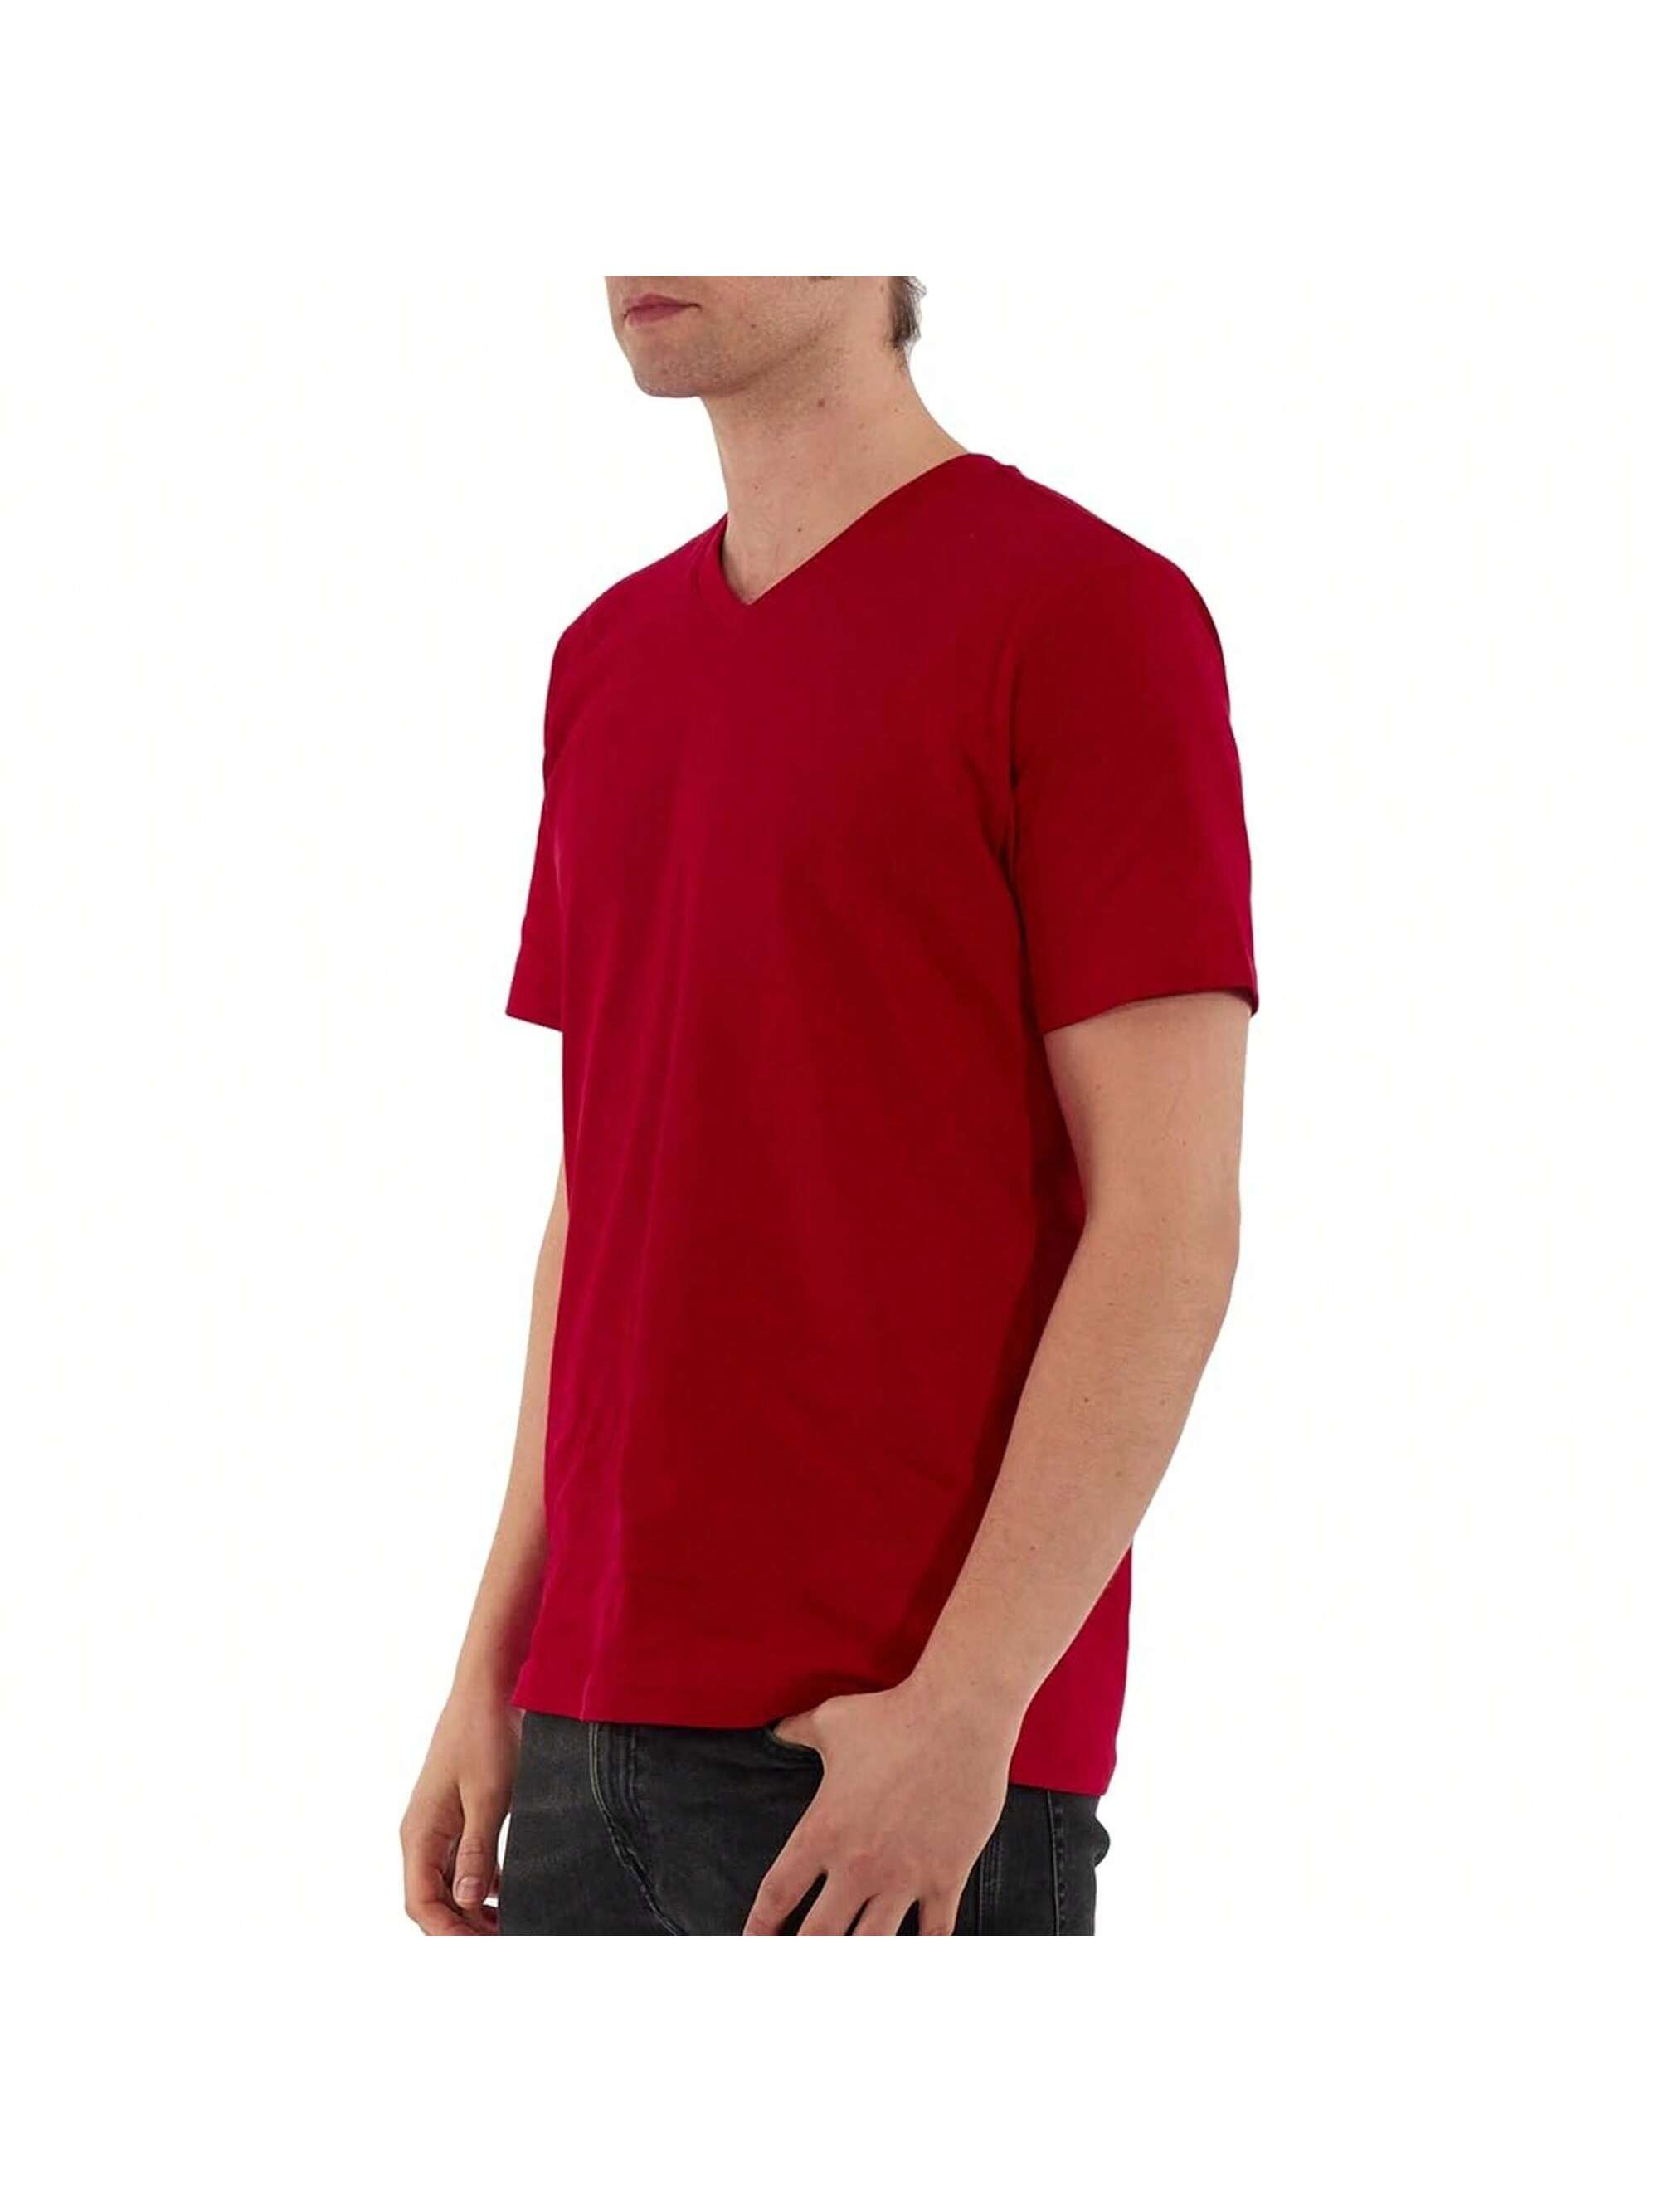 Мужская хлопковая футболка премиум-класса с v-образным вырезом Rich Cotton BLK-M, красный